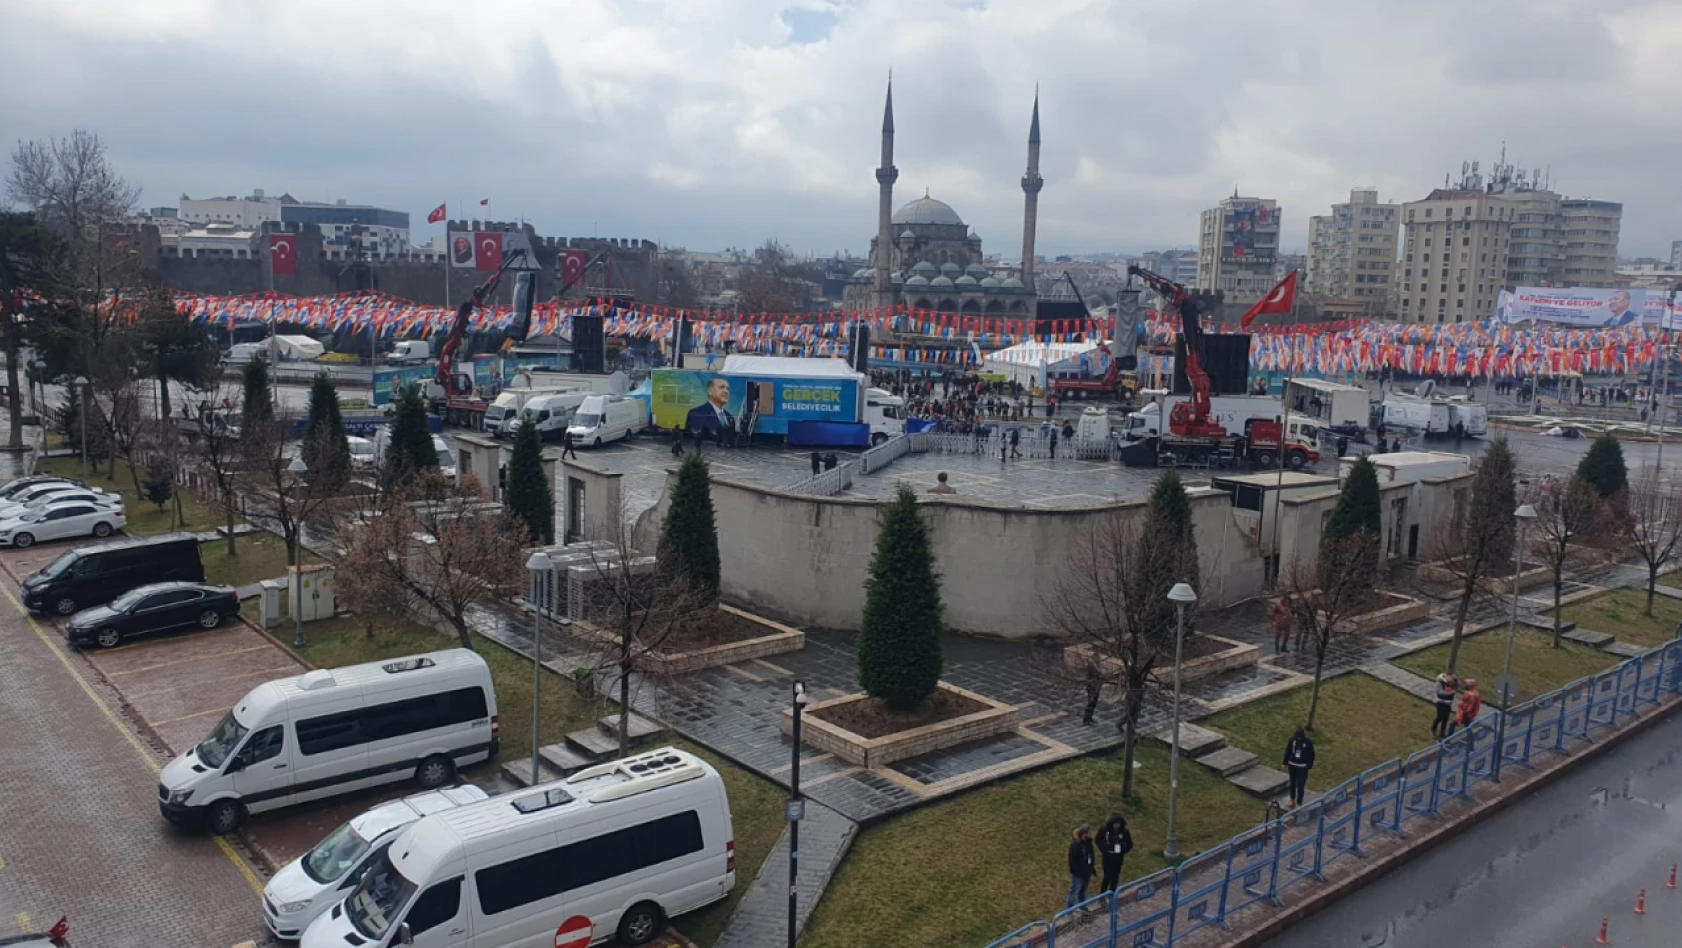 Kayseri'ye gelen Erdoğan iftarını nerede yapacak?